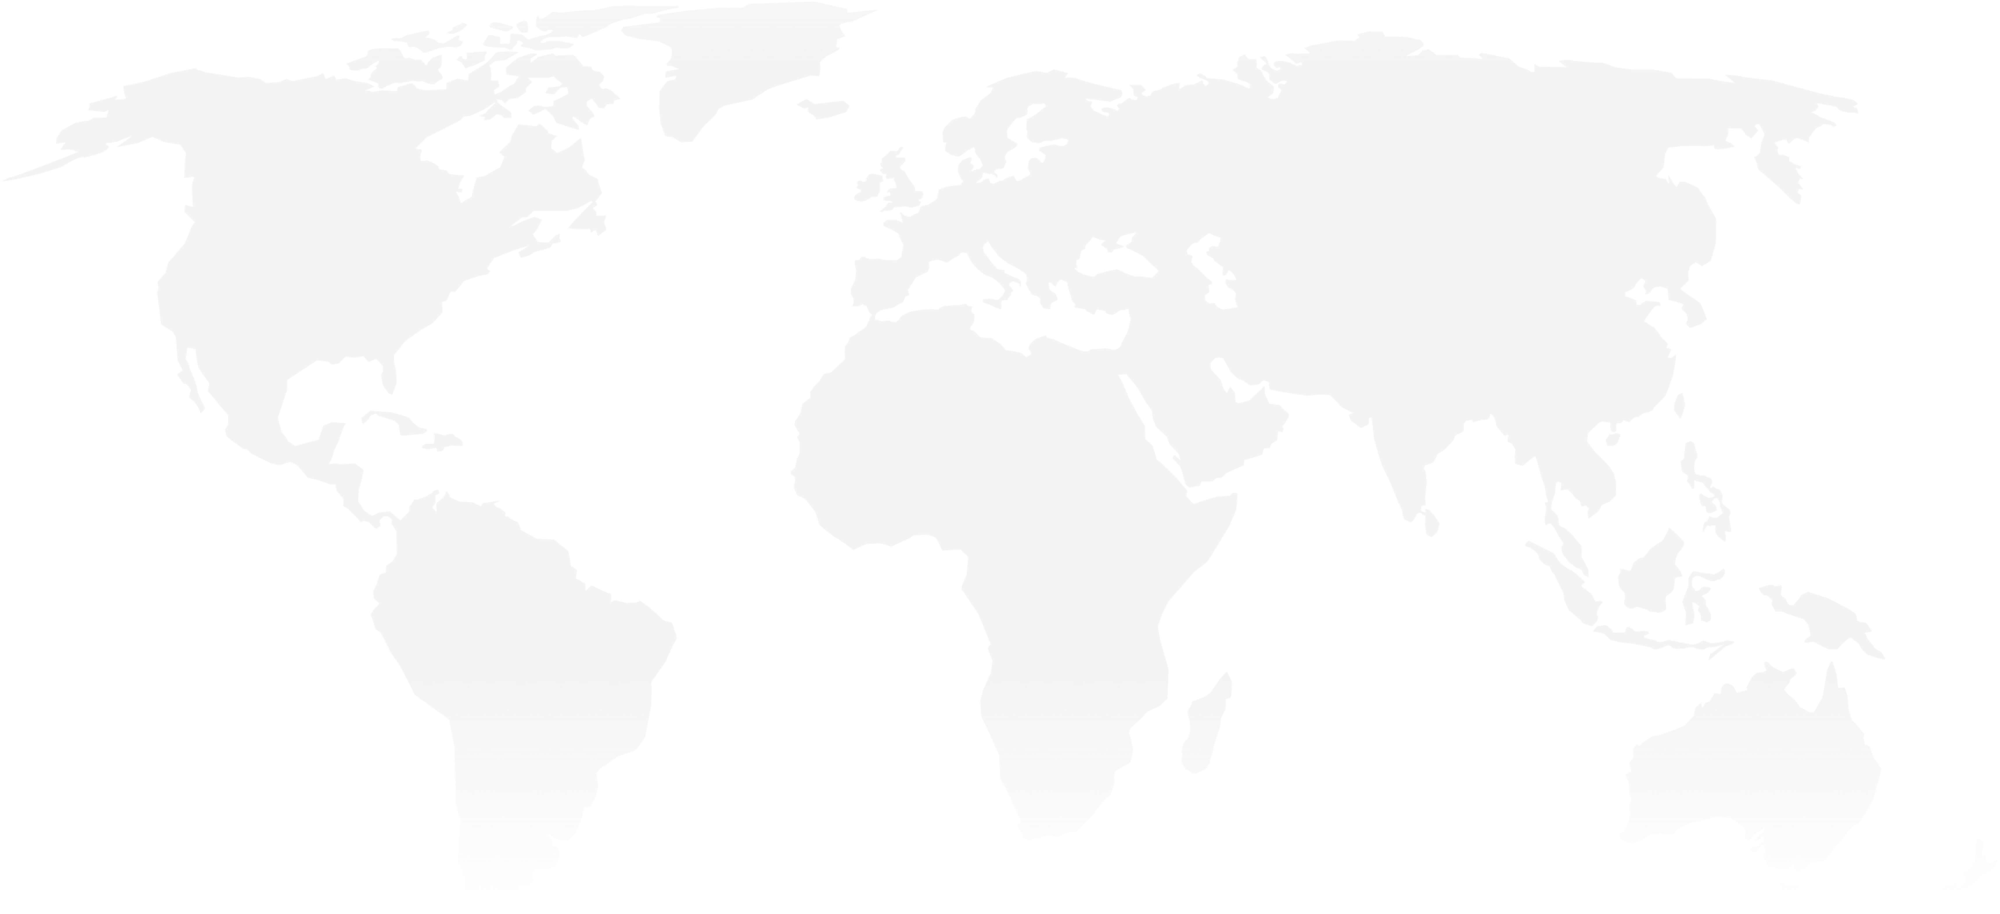 Carte du monde en gris clair sur fond blanc